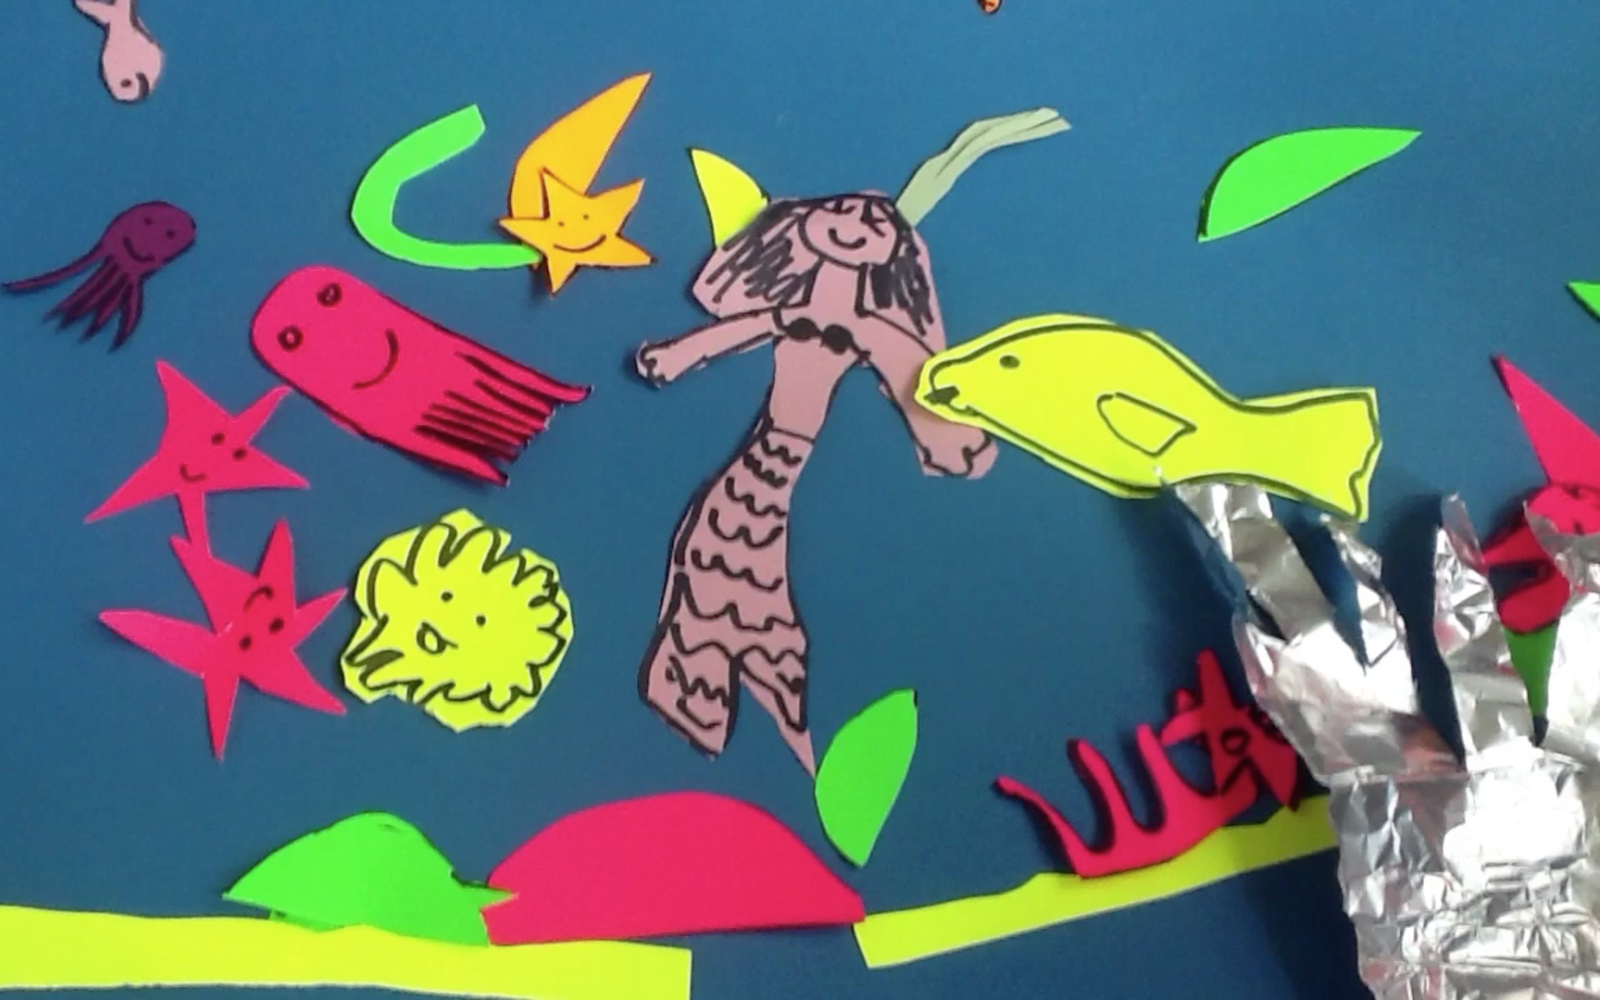 Standbild aus Stop-Motion Trickfilm. Eine Unterwasserszene mit Quallen und Fischen sowie einer Meerjungfrau.